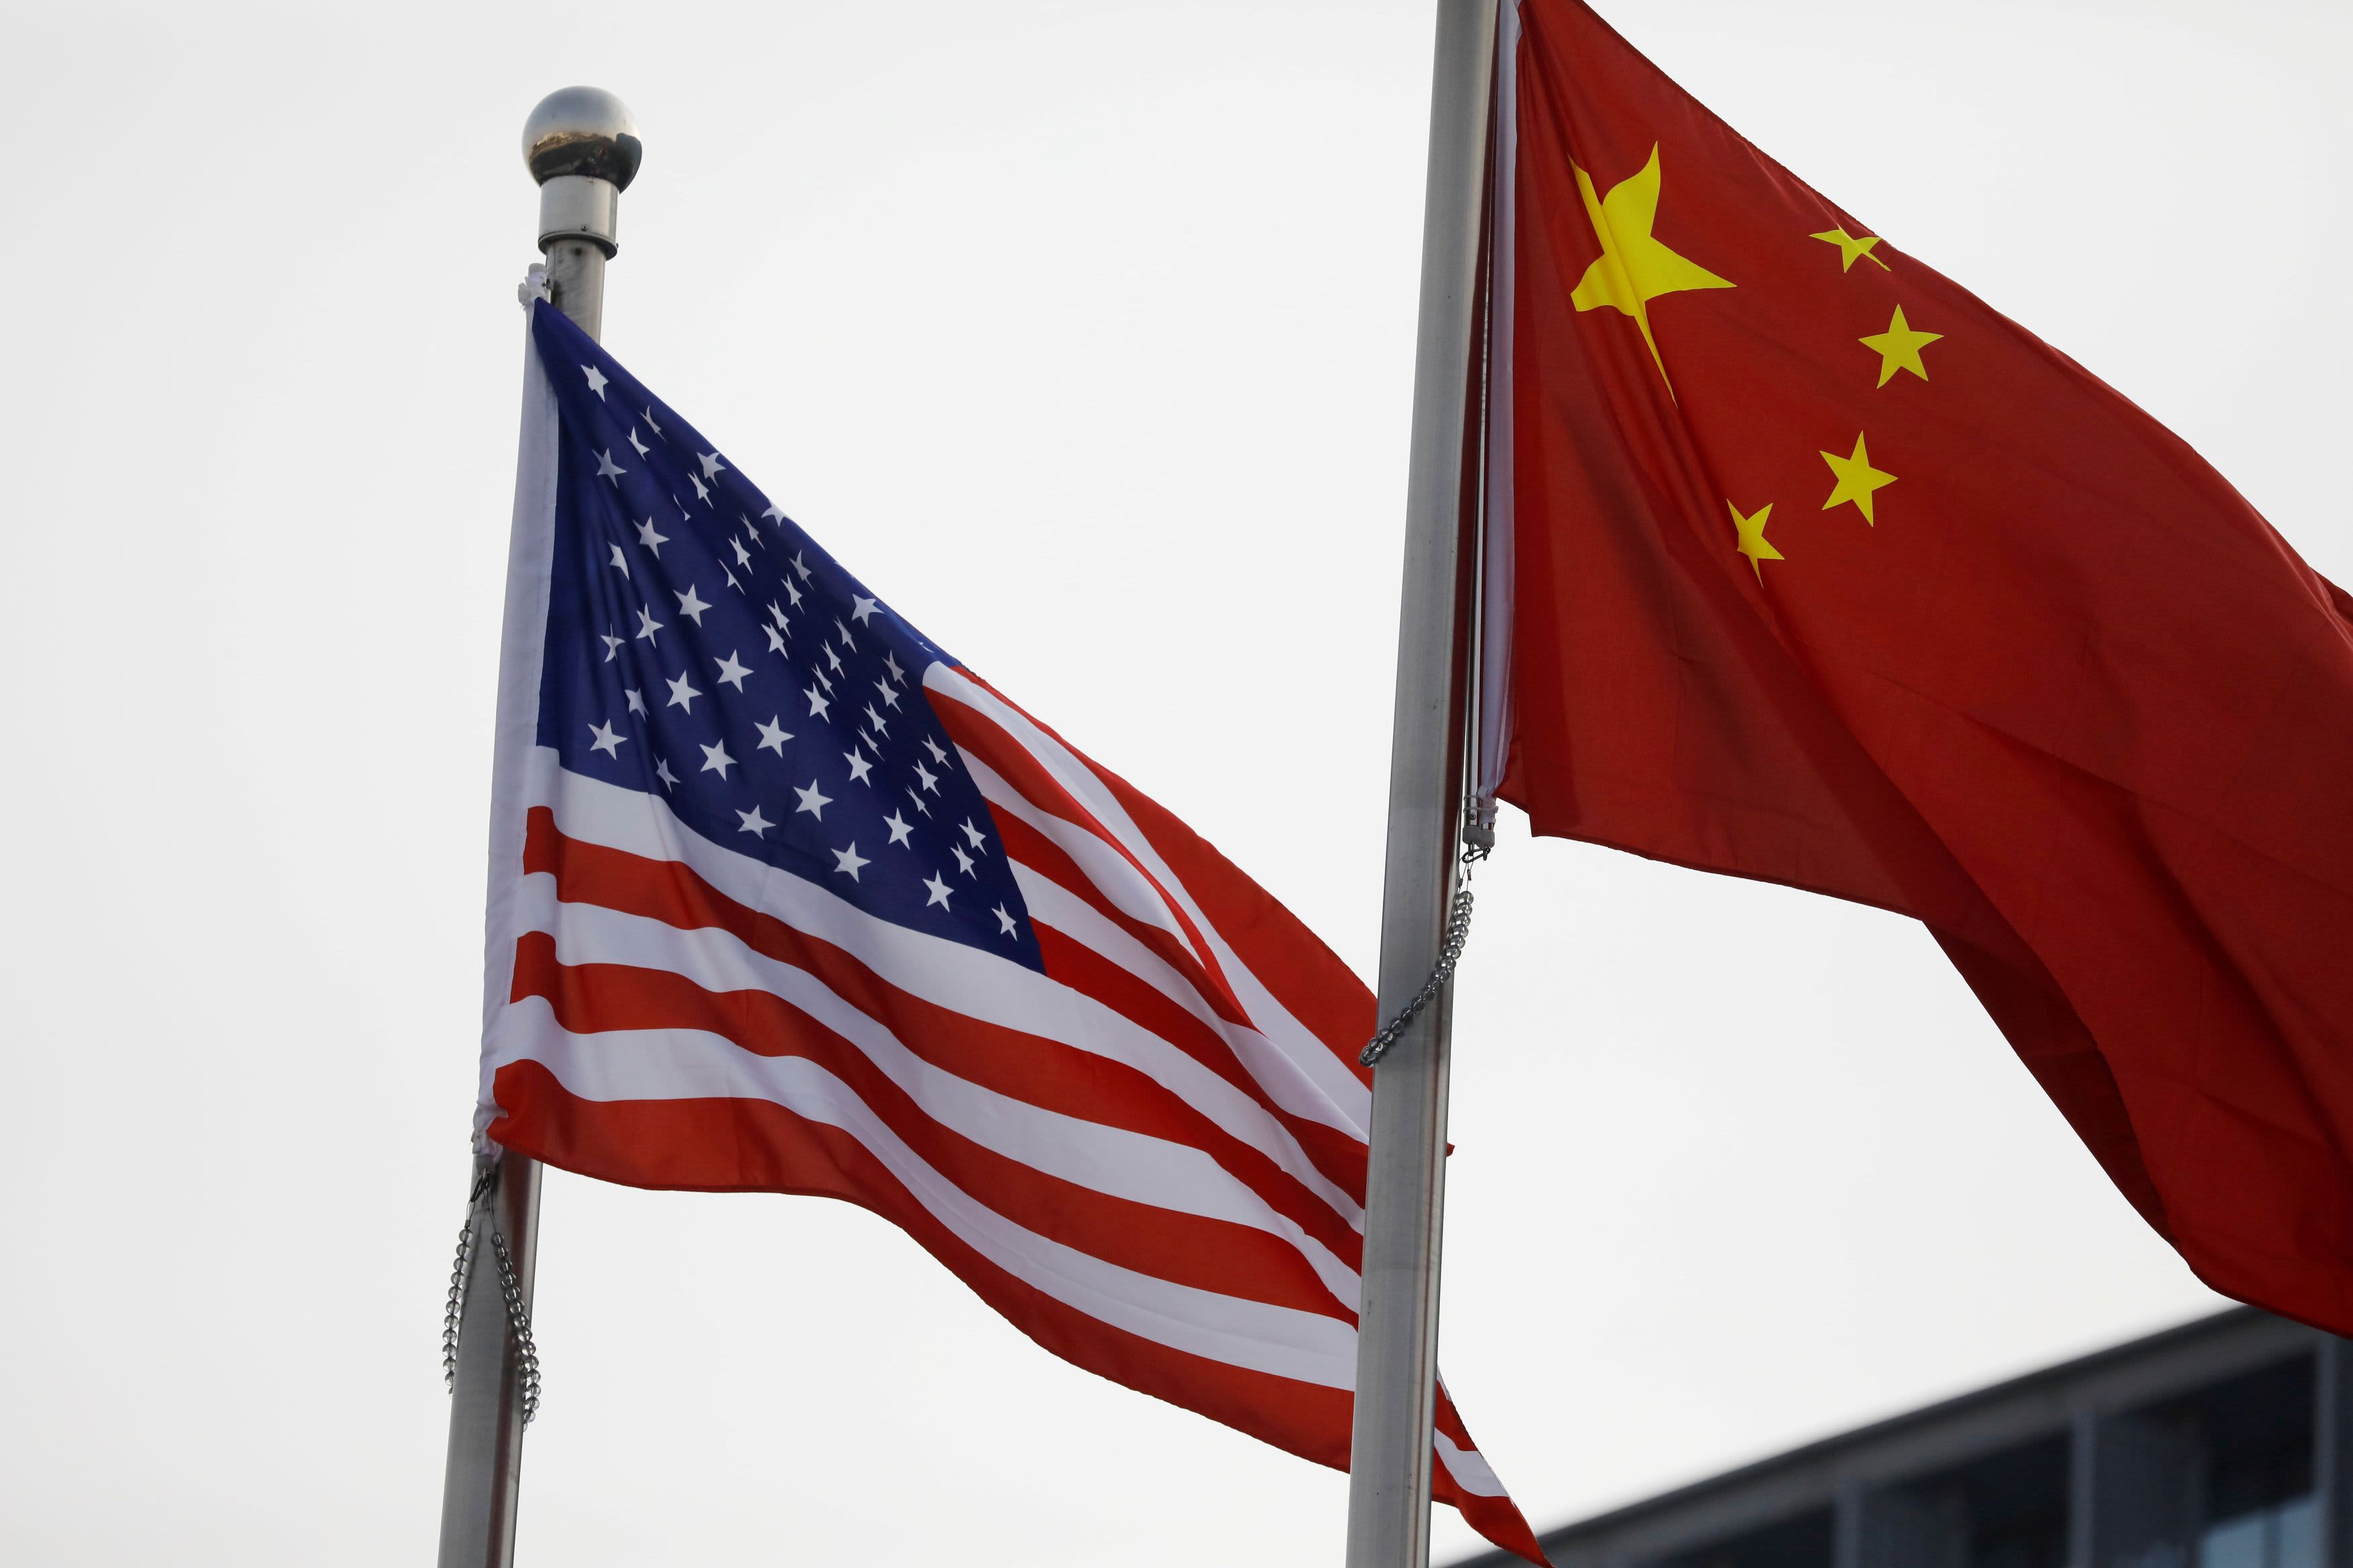 U.S. bans imports from China’s Xinjiang region, citing human rights abuses